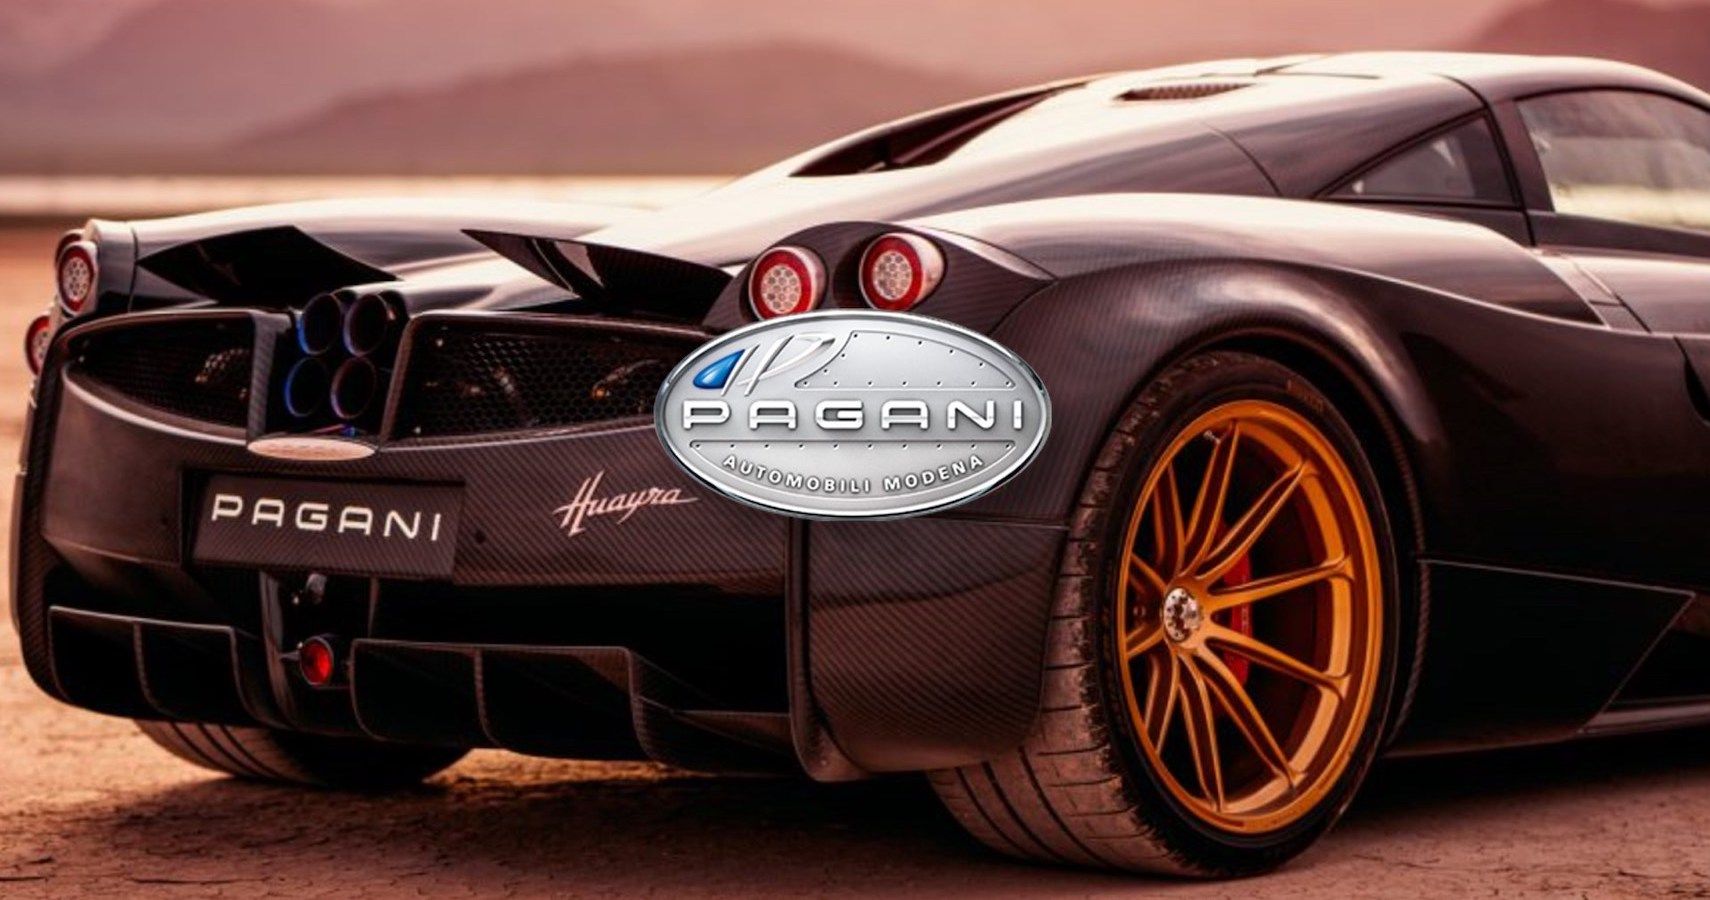 Pagani Logo | Pagani car, Car logos, Pagani